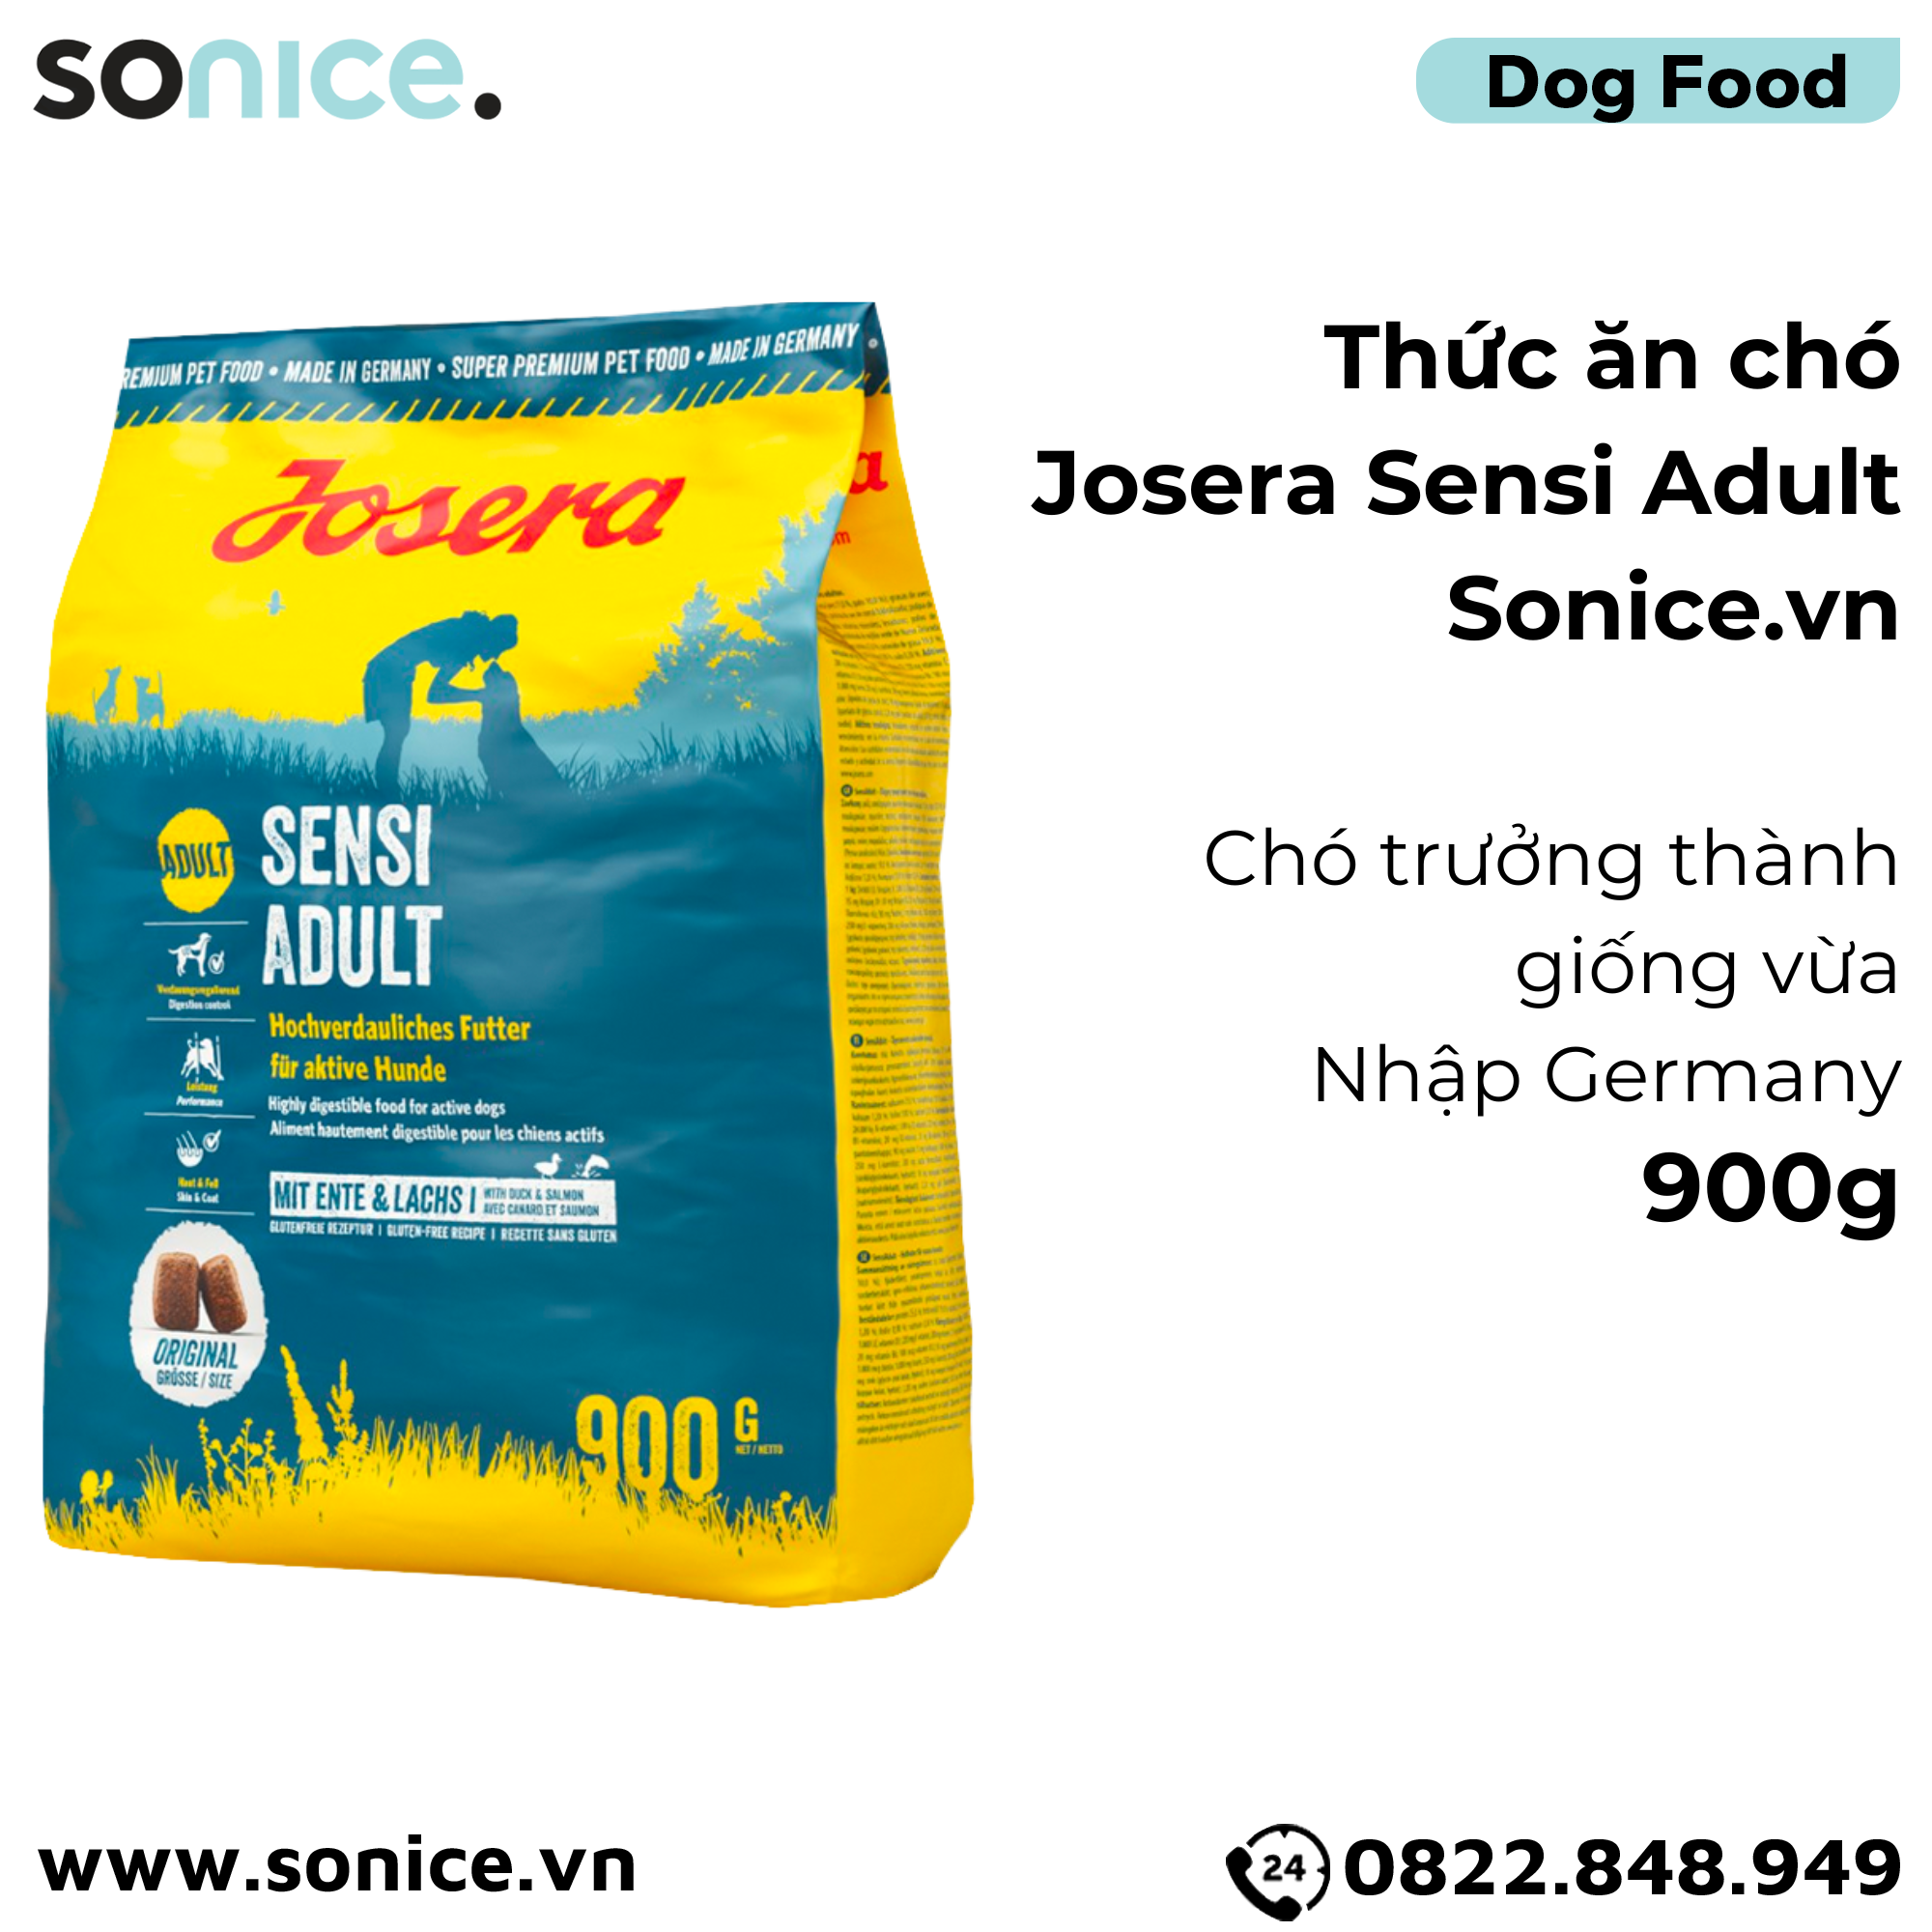  Thức ăn chó Josera Sensi Adult 900g - chó trưởng thành giống vừa Nhập Germany SONICE. 